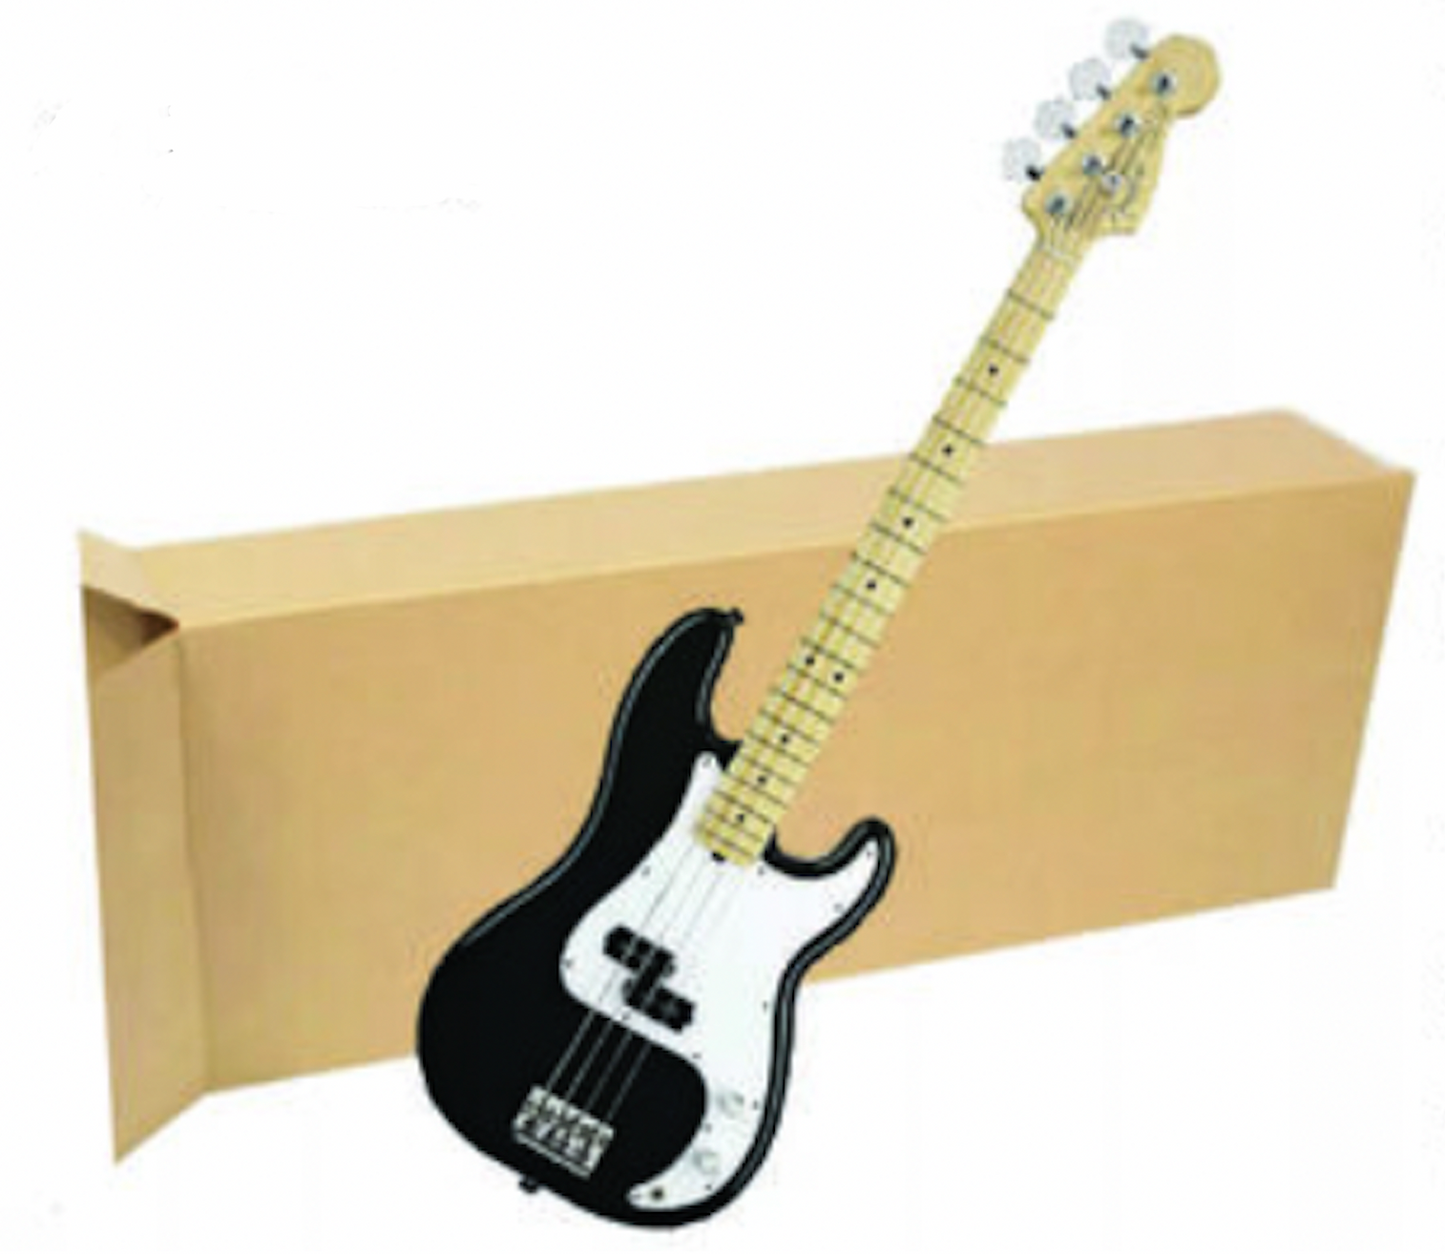 Bass Guitar Shipping Box